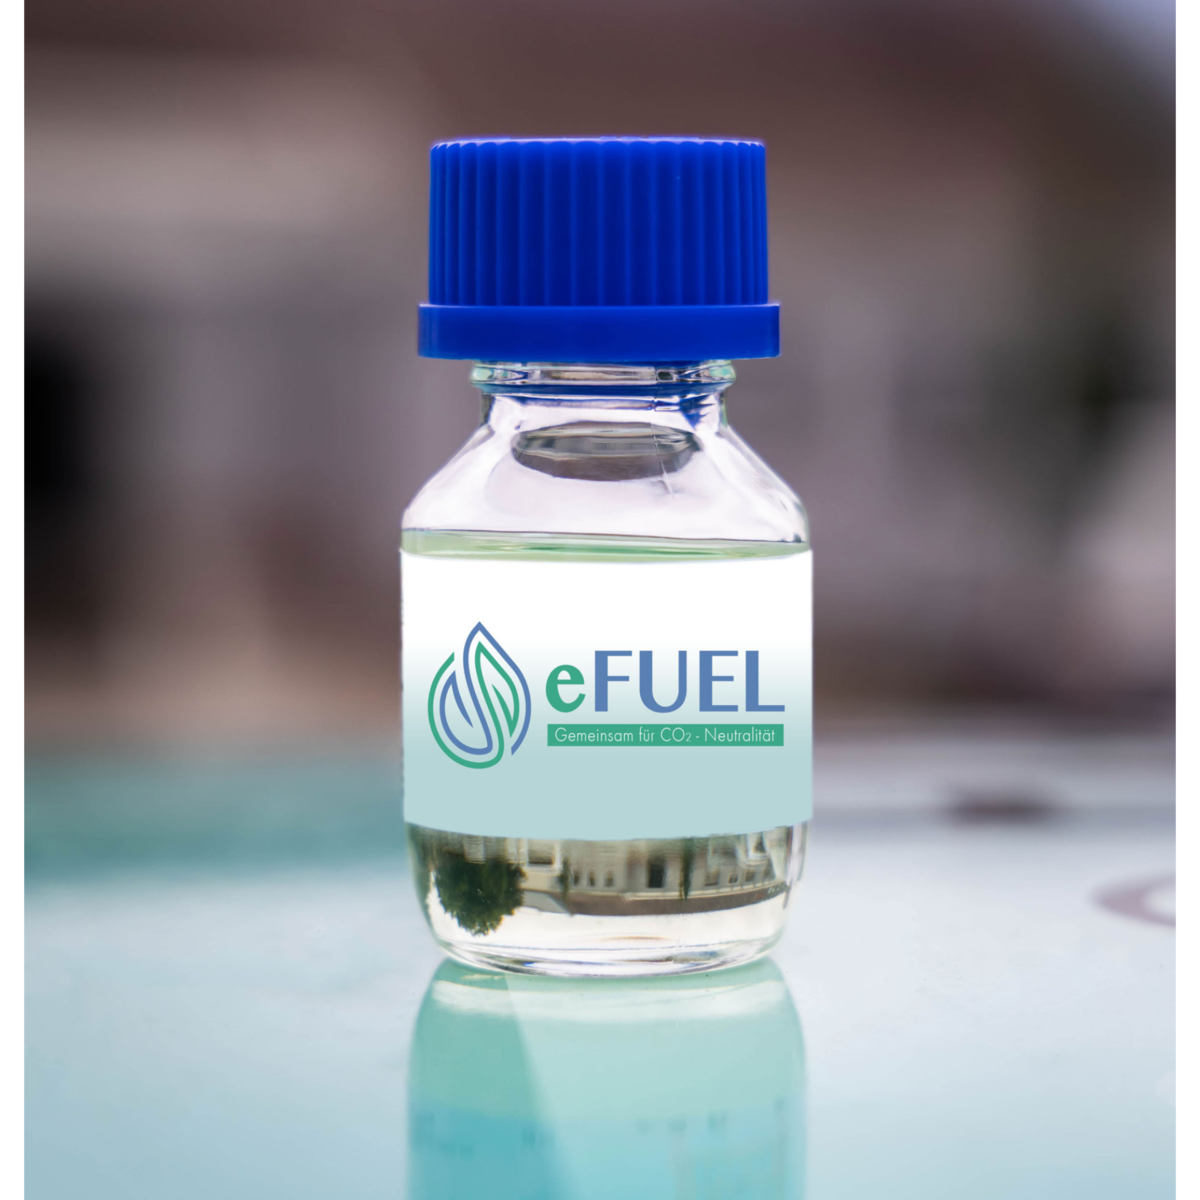 eFuel GmbH: Gemeinsam für CO2-Neutralität